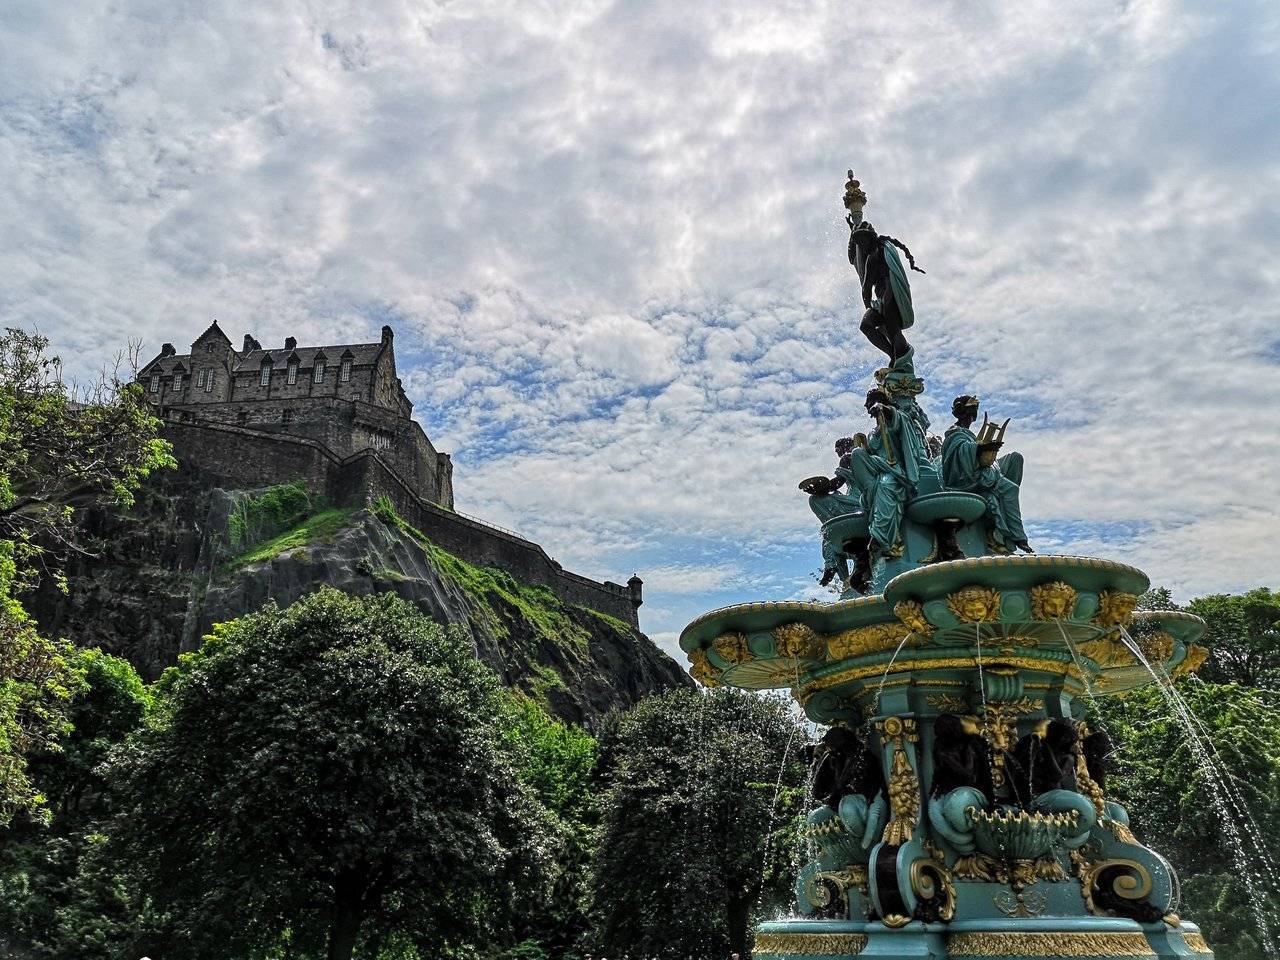 Ross Fountain near the Castle Rock and Edinburgh Castle